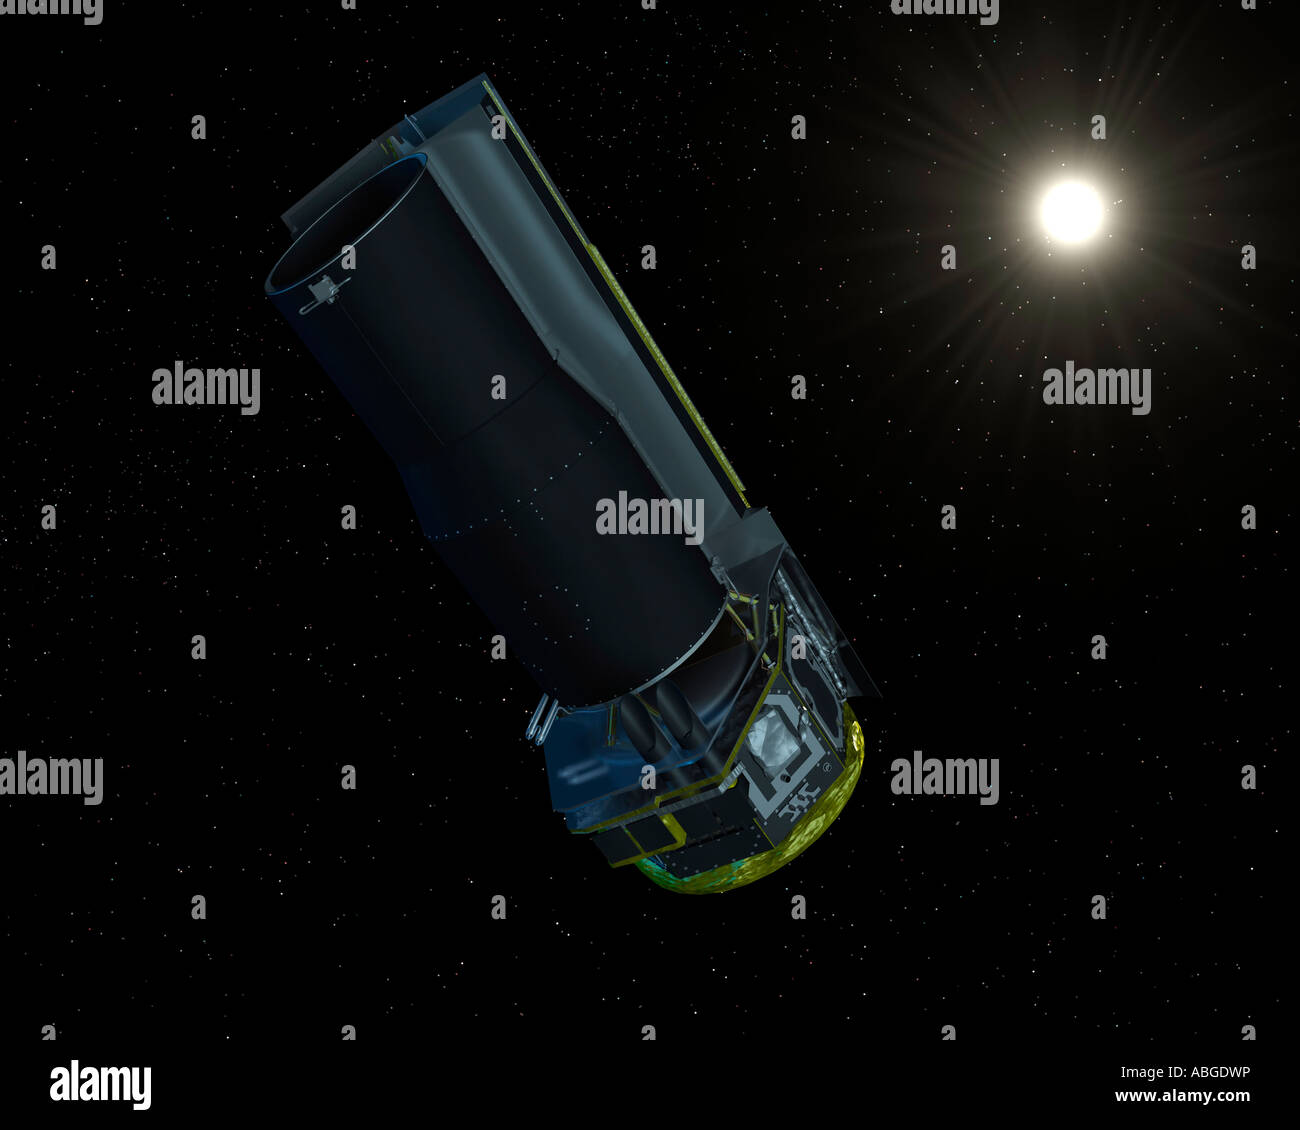 Spitzer ha visto in luce visibile. La protezione solare è sempre rivolto verso il sole, consentendo la navicella spaziale a rimanere molto freddo. Foto Stock